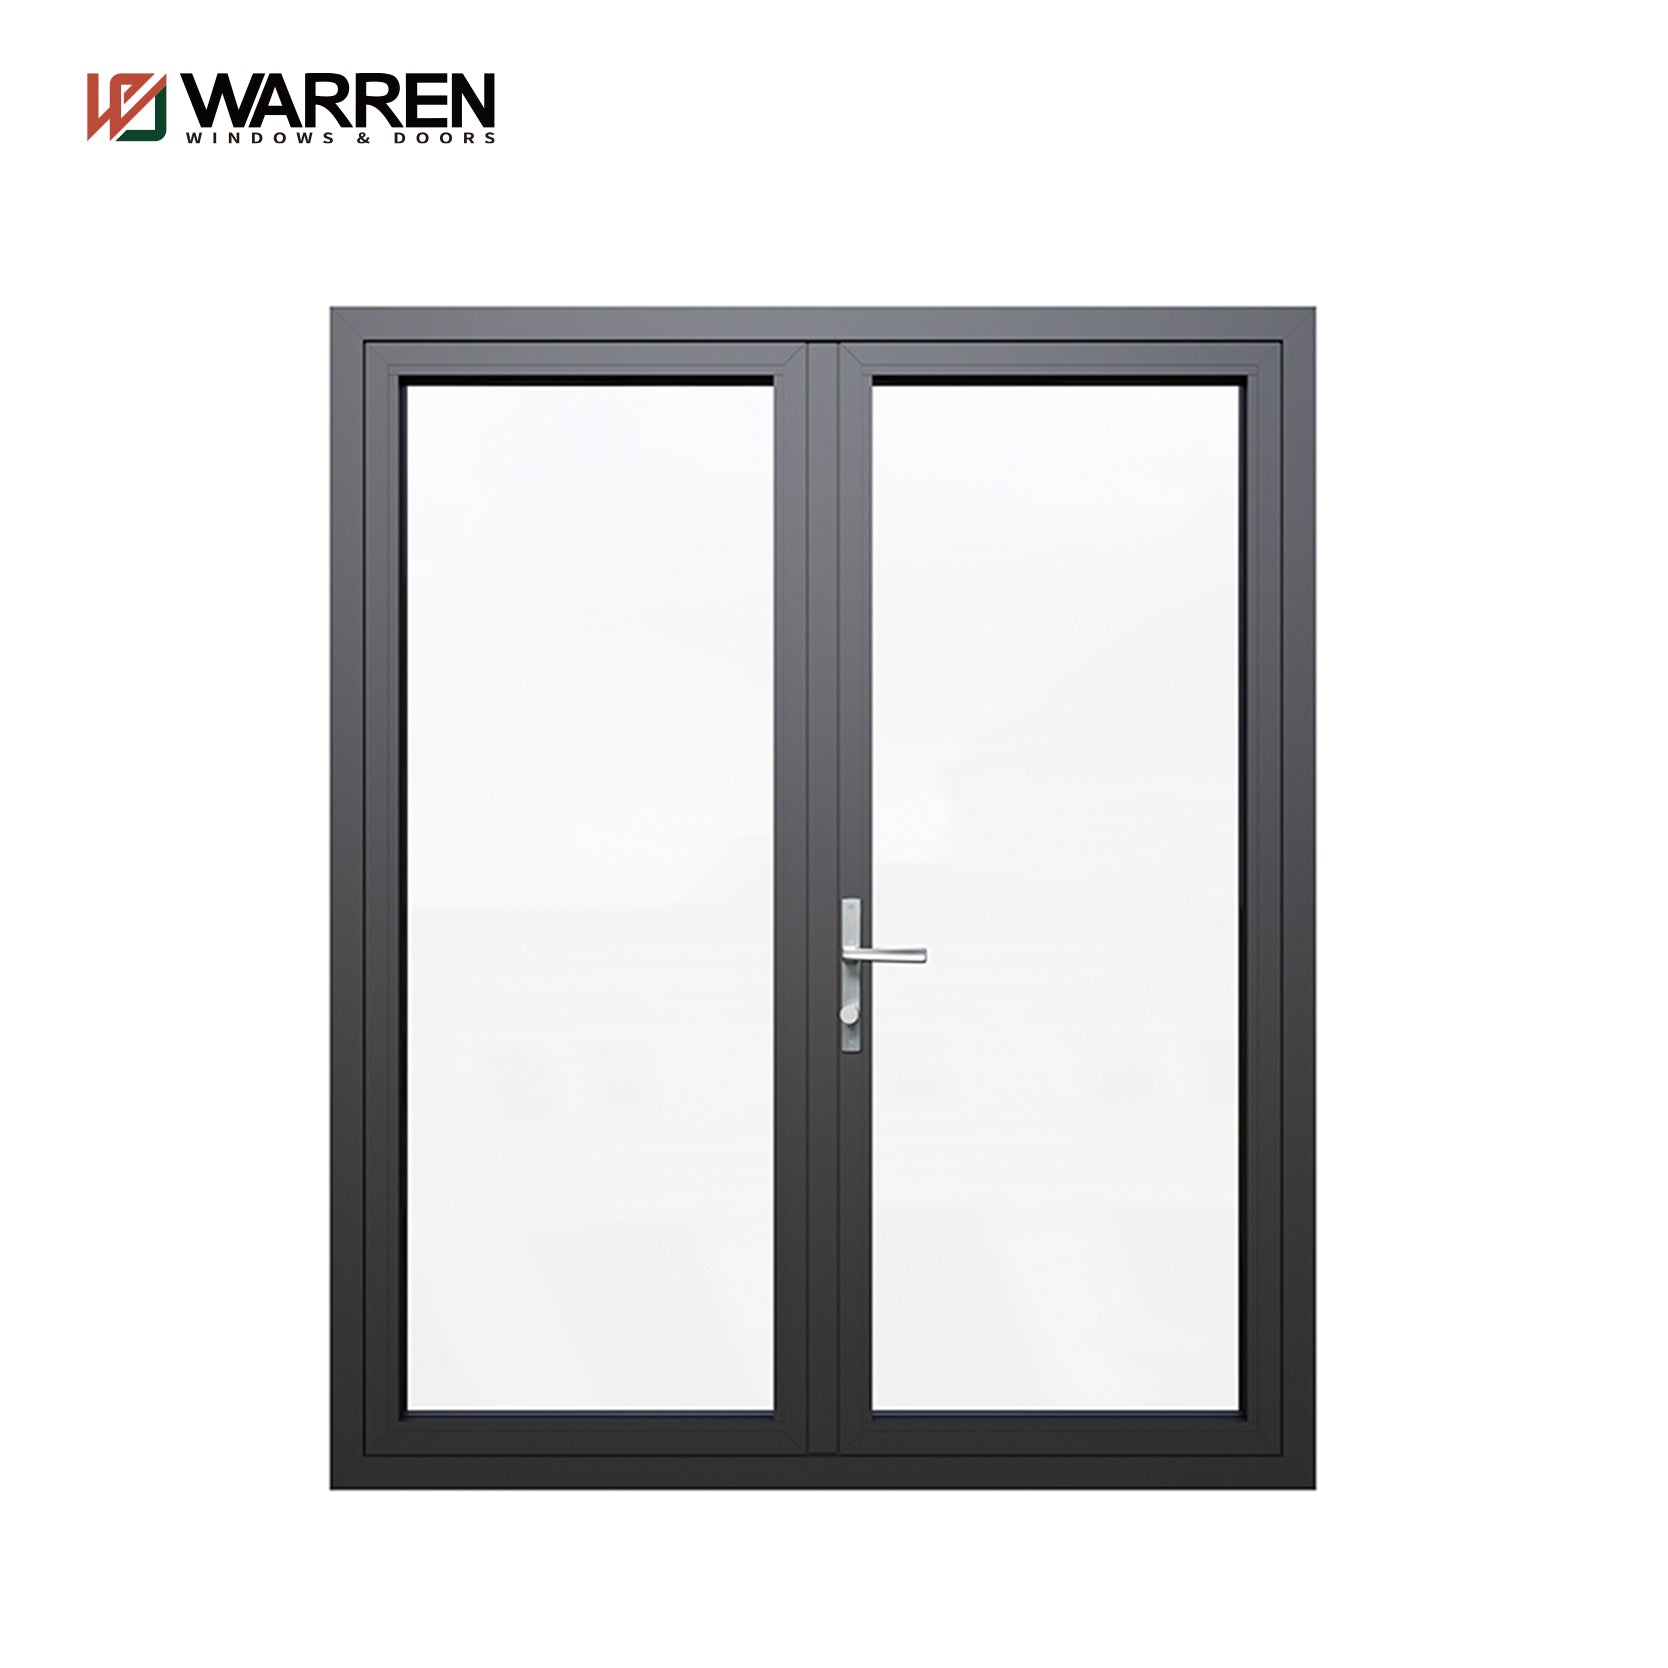 Warren 60x96 Interior French Doors With Double Doors Interior Glass